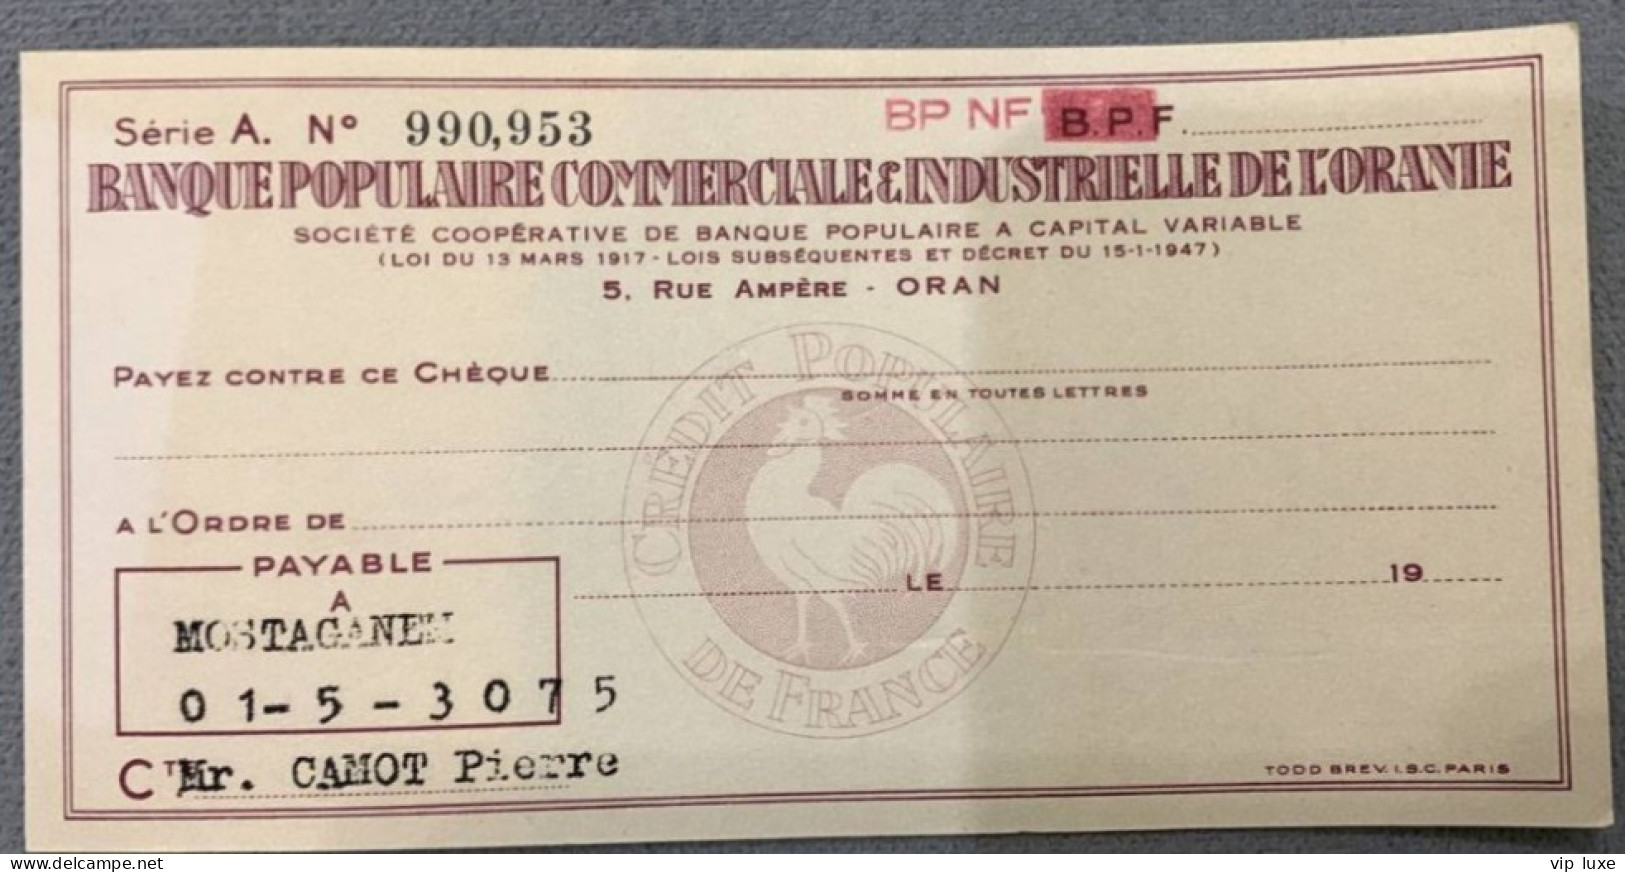 Cheque Banque Populaire Commerciale Et Industrielle De L'oranie 1956 - Chèques & Chèques De Voyage